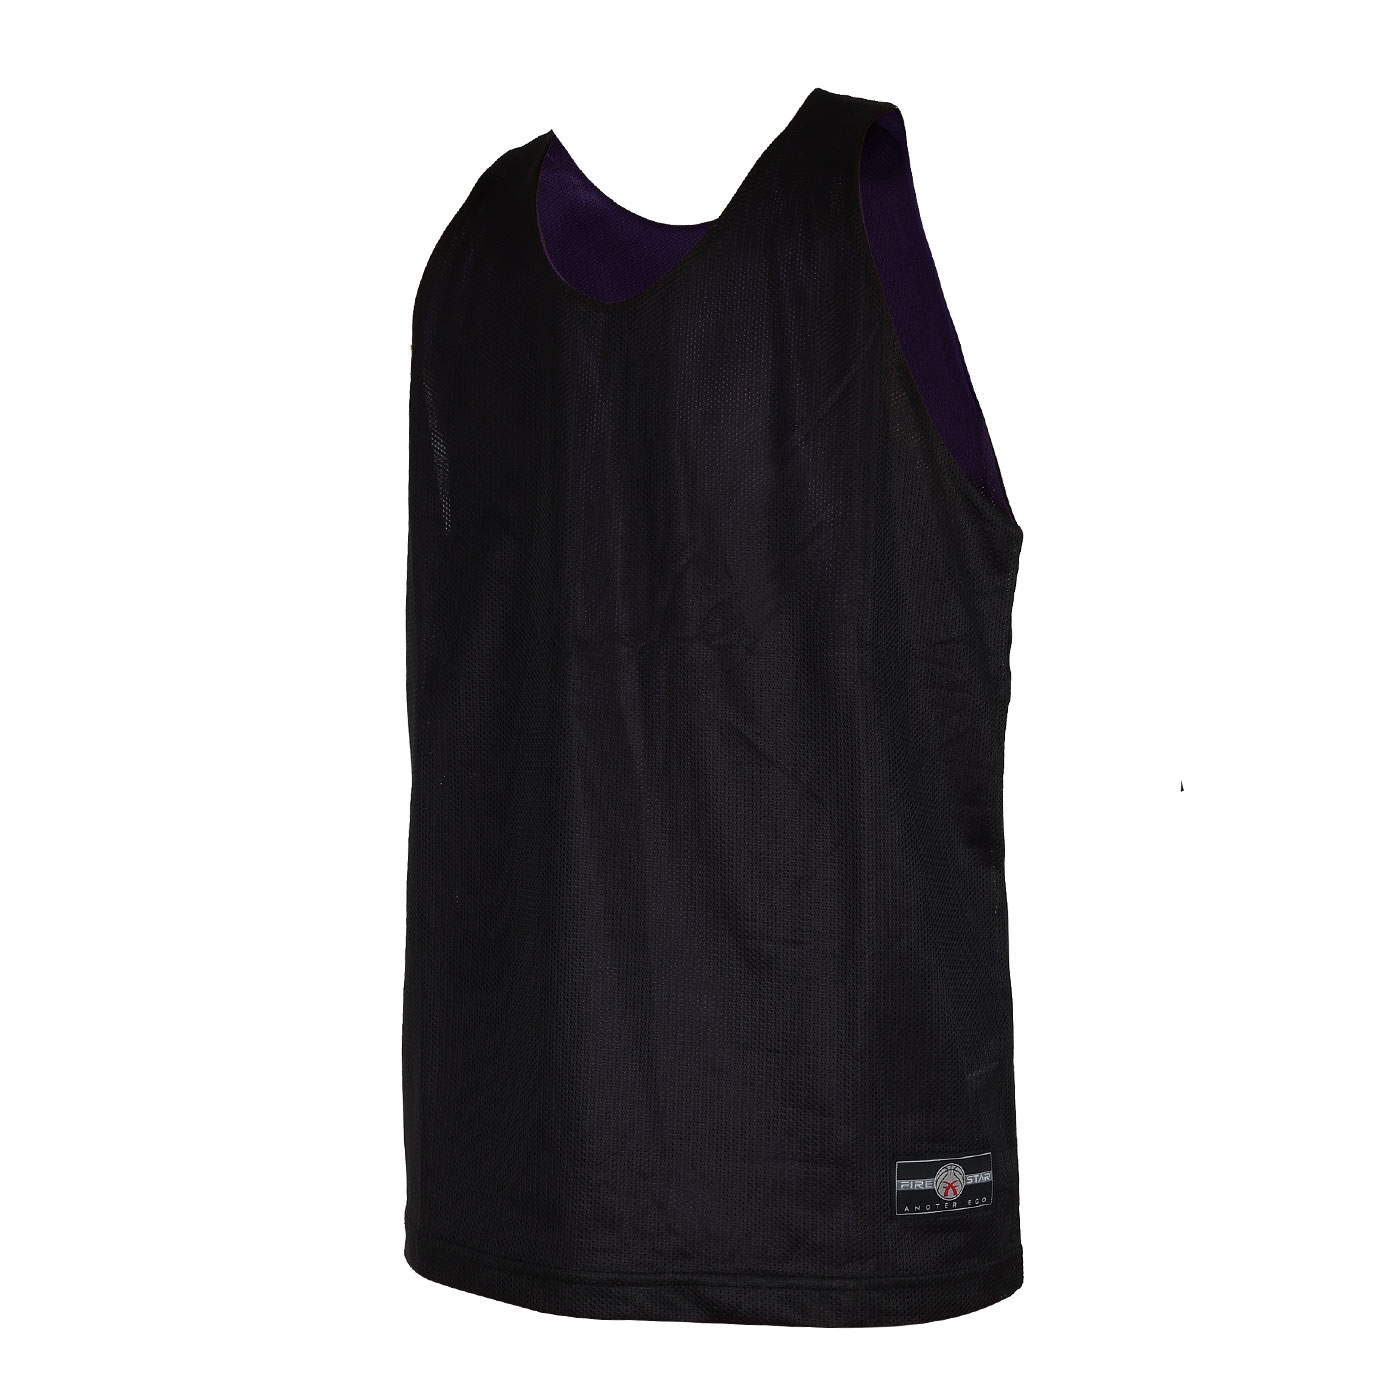 FIRESTAR 籃球背心  90102-80 - 黑紫